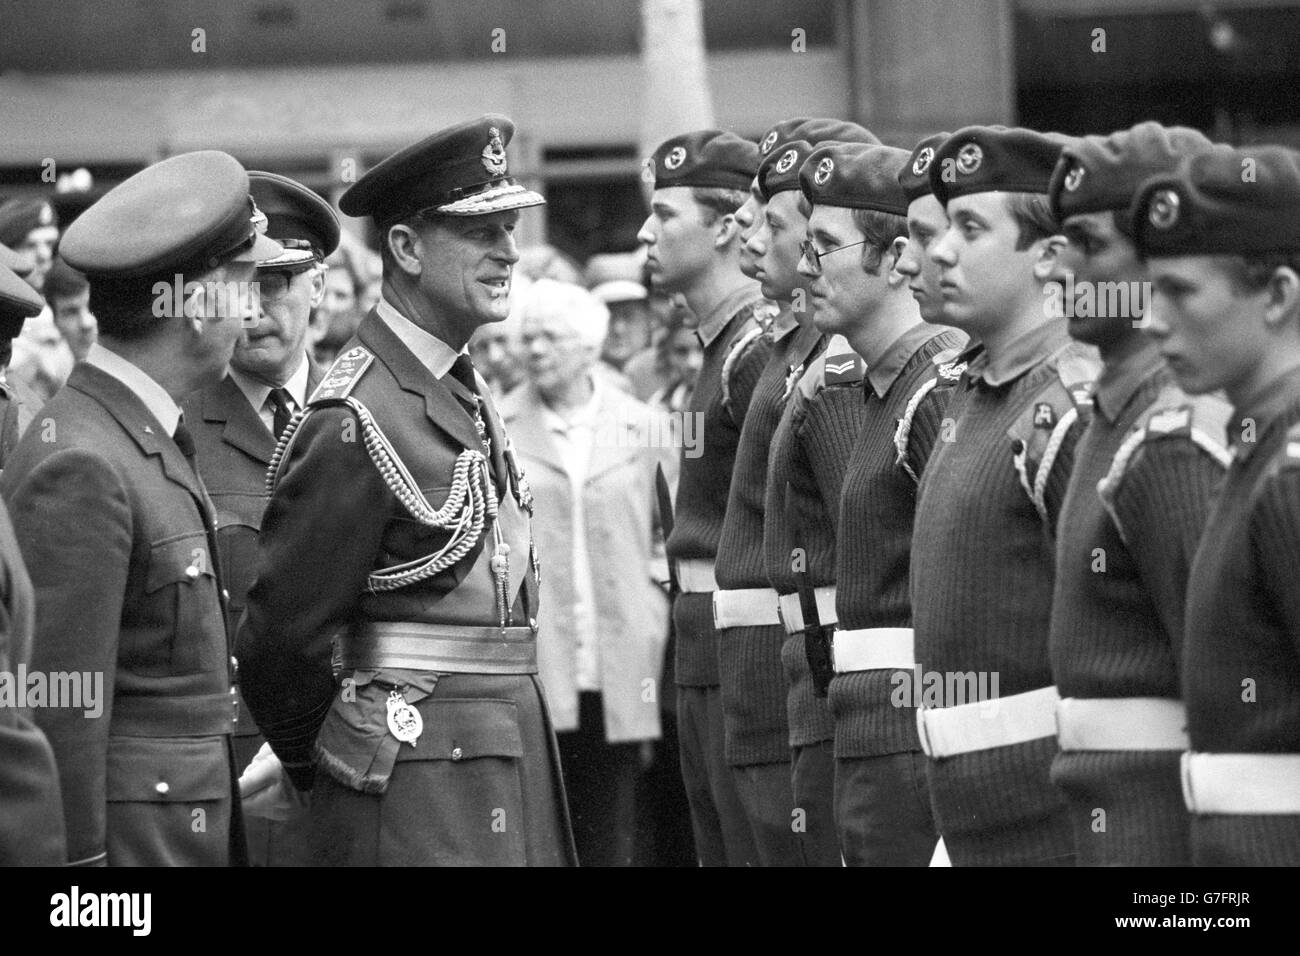 Le duc d'Édimbourg inspectant les cadets de l'air à l'extérieur de l'église St Clément Dane dans Fleet Street après avoir assisté à un service d'action de grâce où, en tant que commodore-en-chef de l'Air, il a présenté une nouvelle bannière au corps d'entraînement de l'Air. Banque D'Images